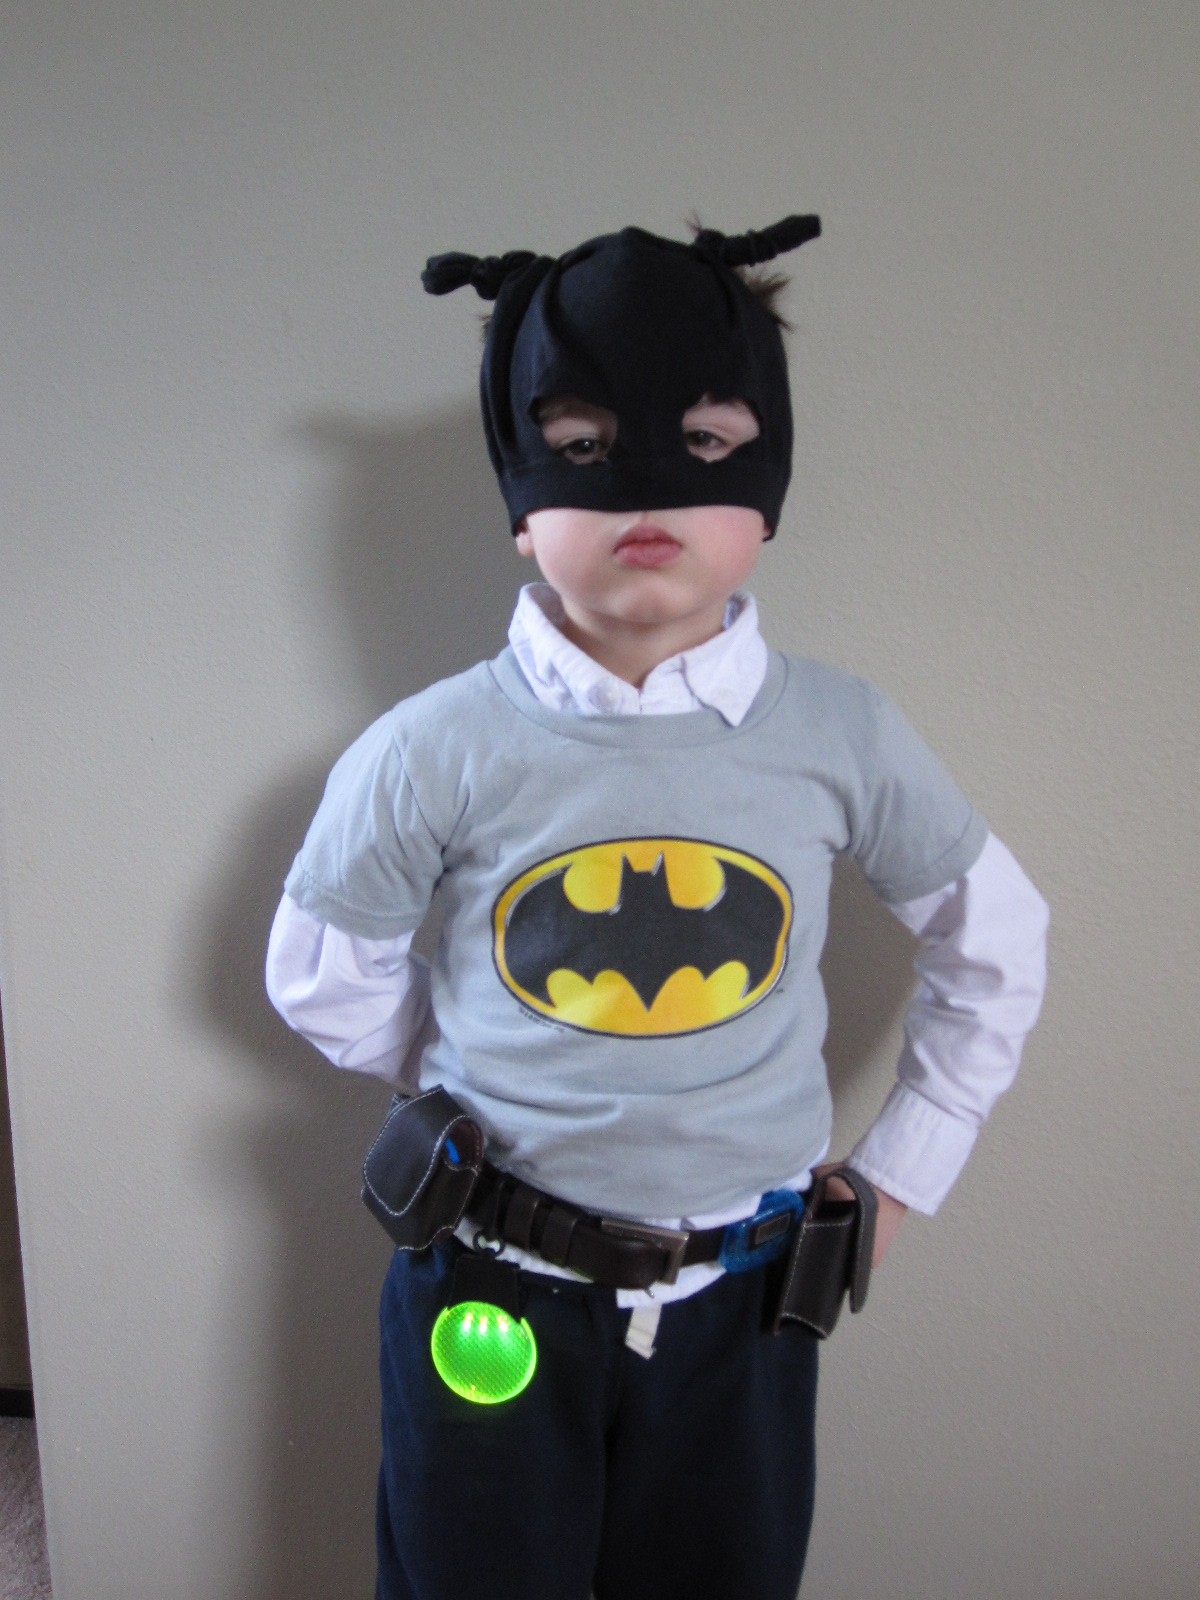 DIY Batman Costume Toddler
 DIY Batman Belt and Mask No Time For Flash Cards